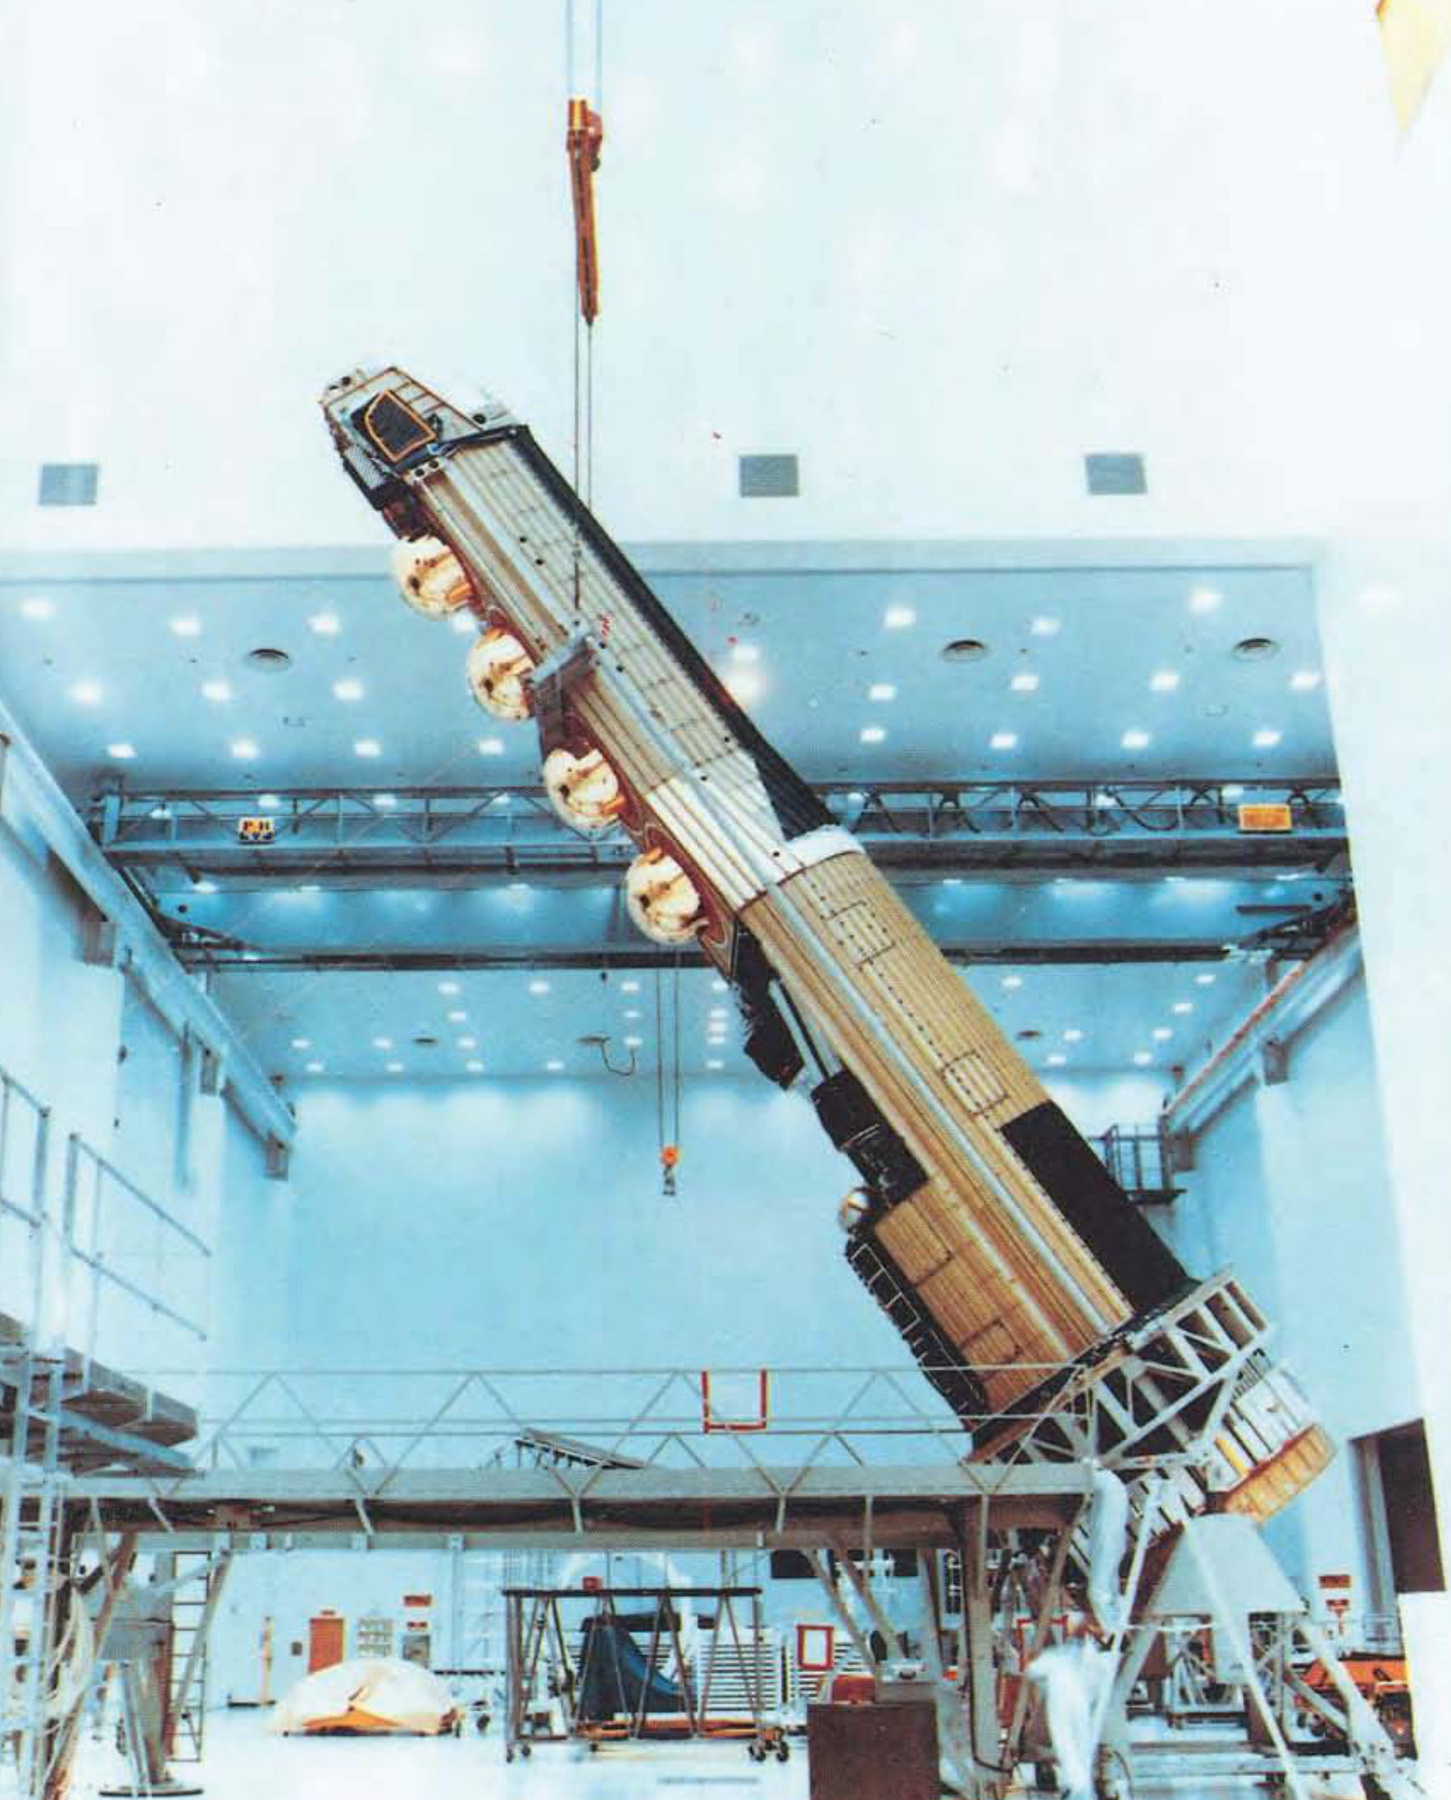 SA-5 intekontinentális ballisztikus rakéták bázisa (Hexagon)